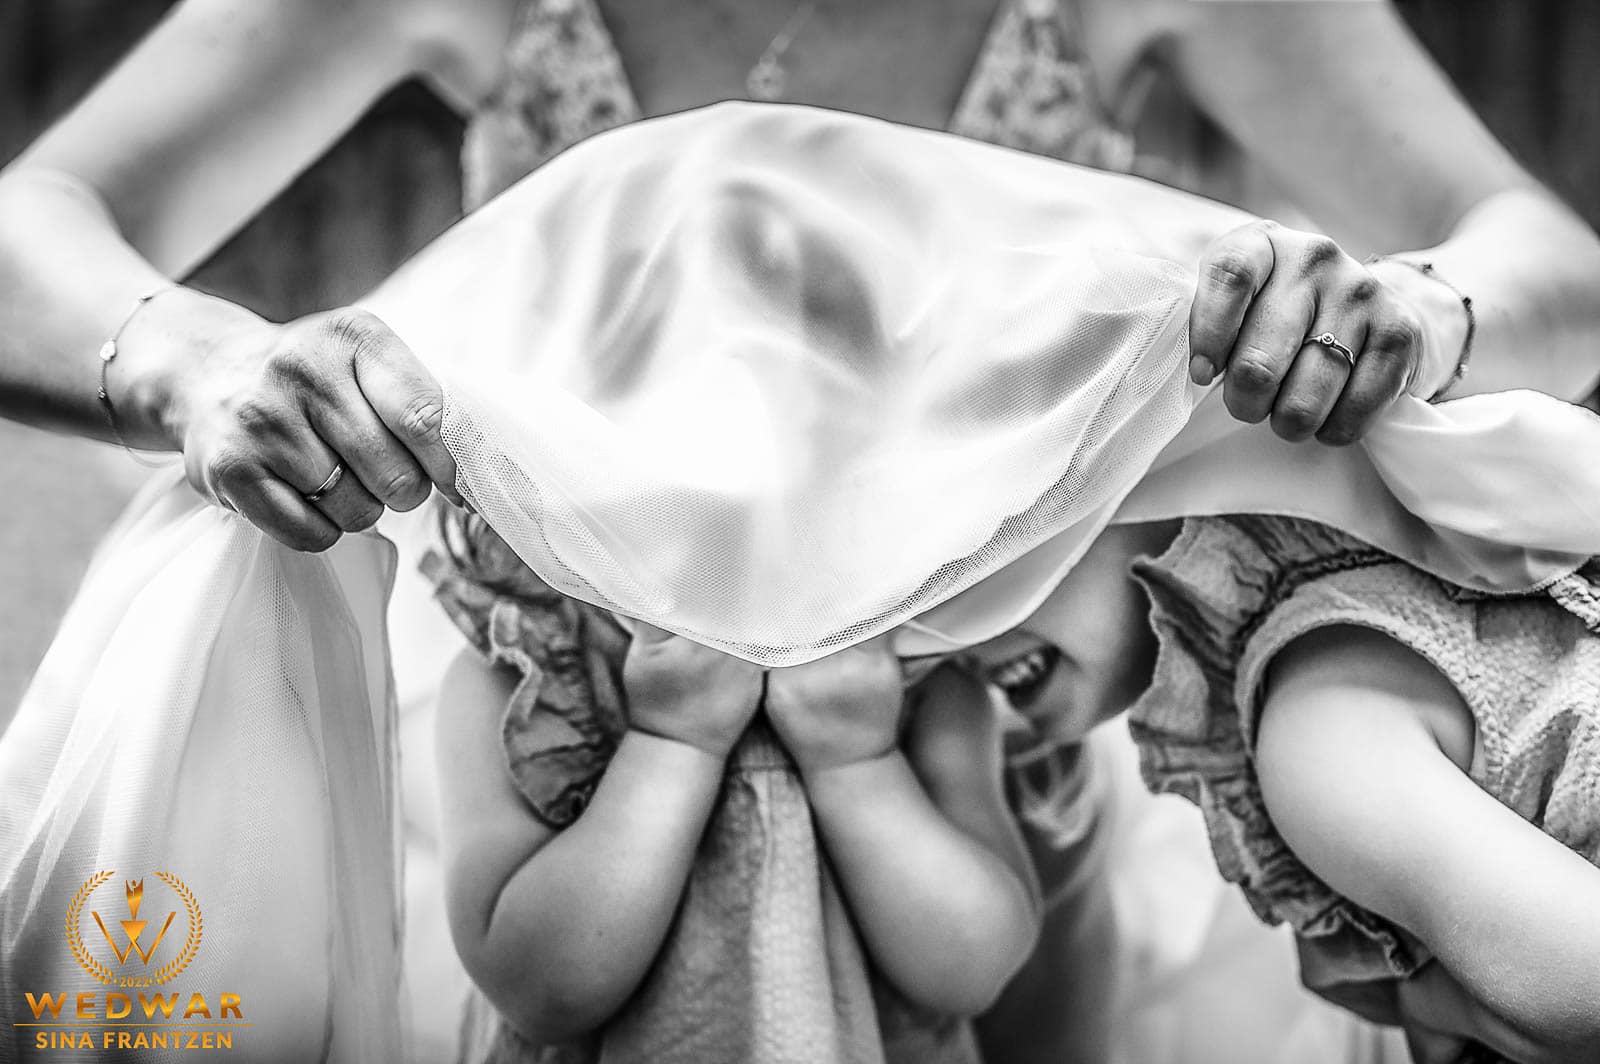 Kinder verstecken sich unterm Brautkleid bei der Hochzeit im Eierkaal Remscheid. Hochzeitsfotograf Remscheid. Hochzeitsfotografin Sina Frantzen bildsprache. Gewinnerbild Wedwar Awards